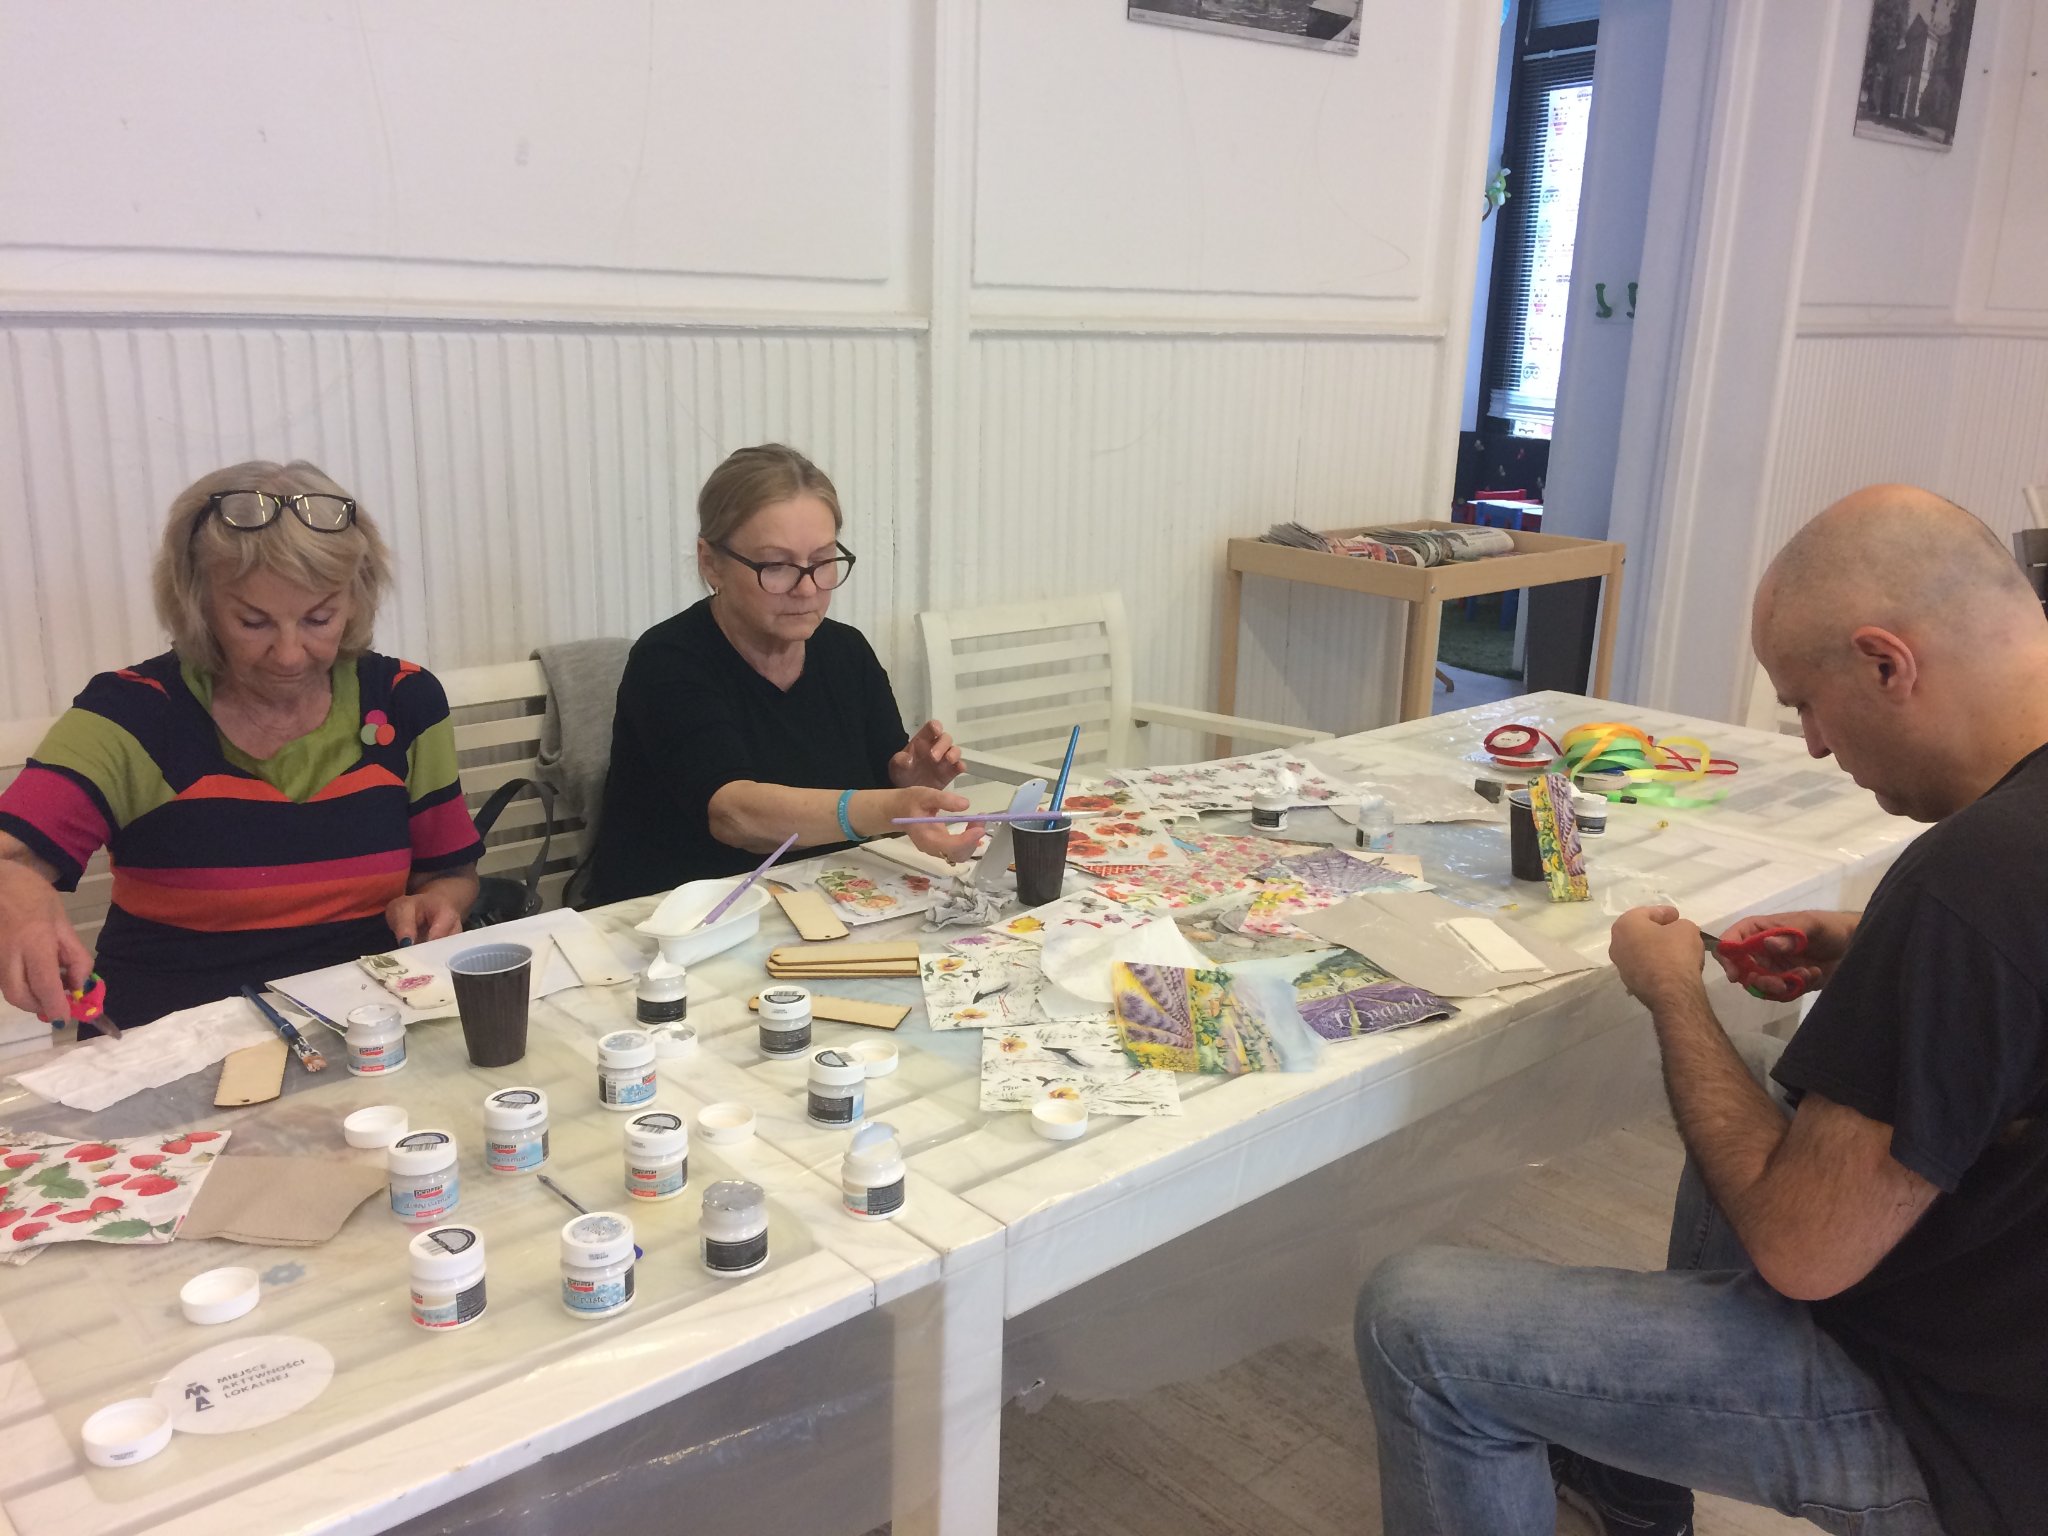 Uczestnicy warsztatów podczas tworzenia zakładek. Na stole rozłożone nożyczki, farby i kolorowy papier